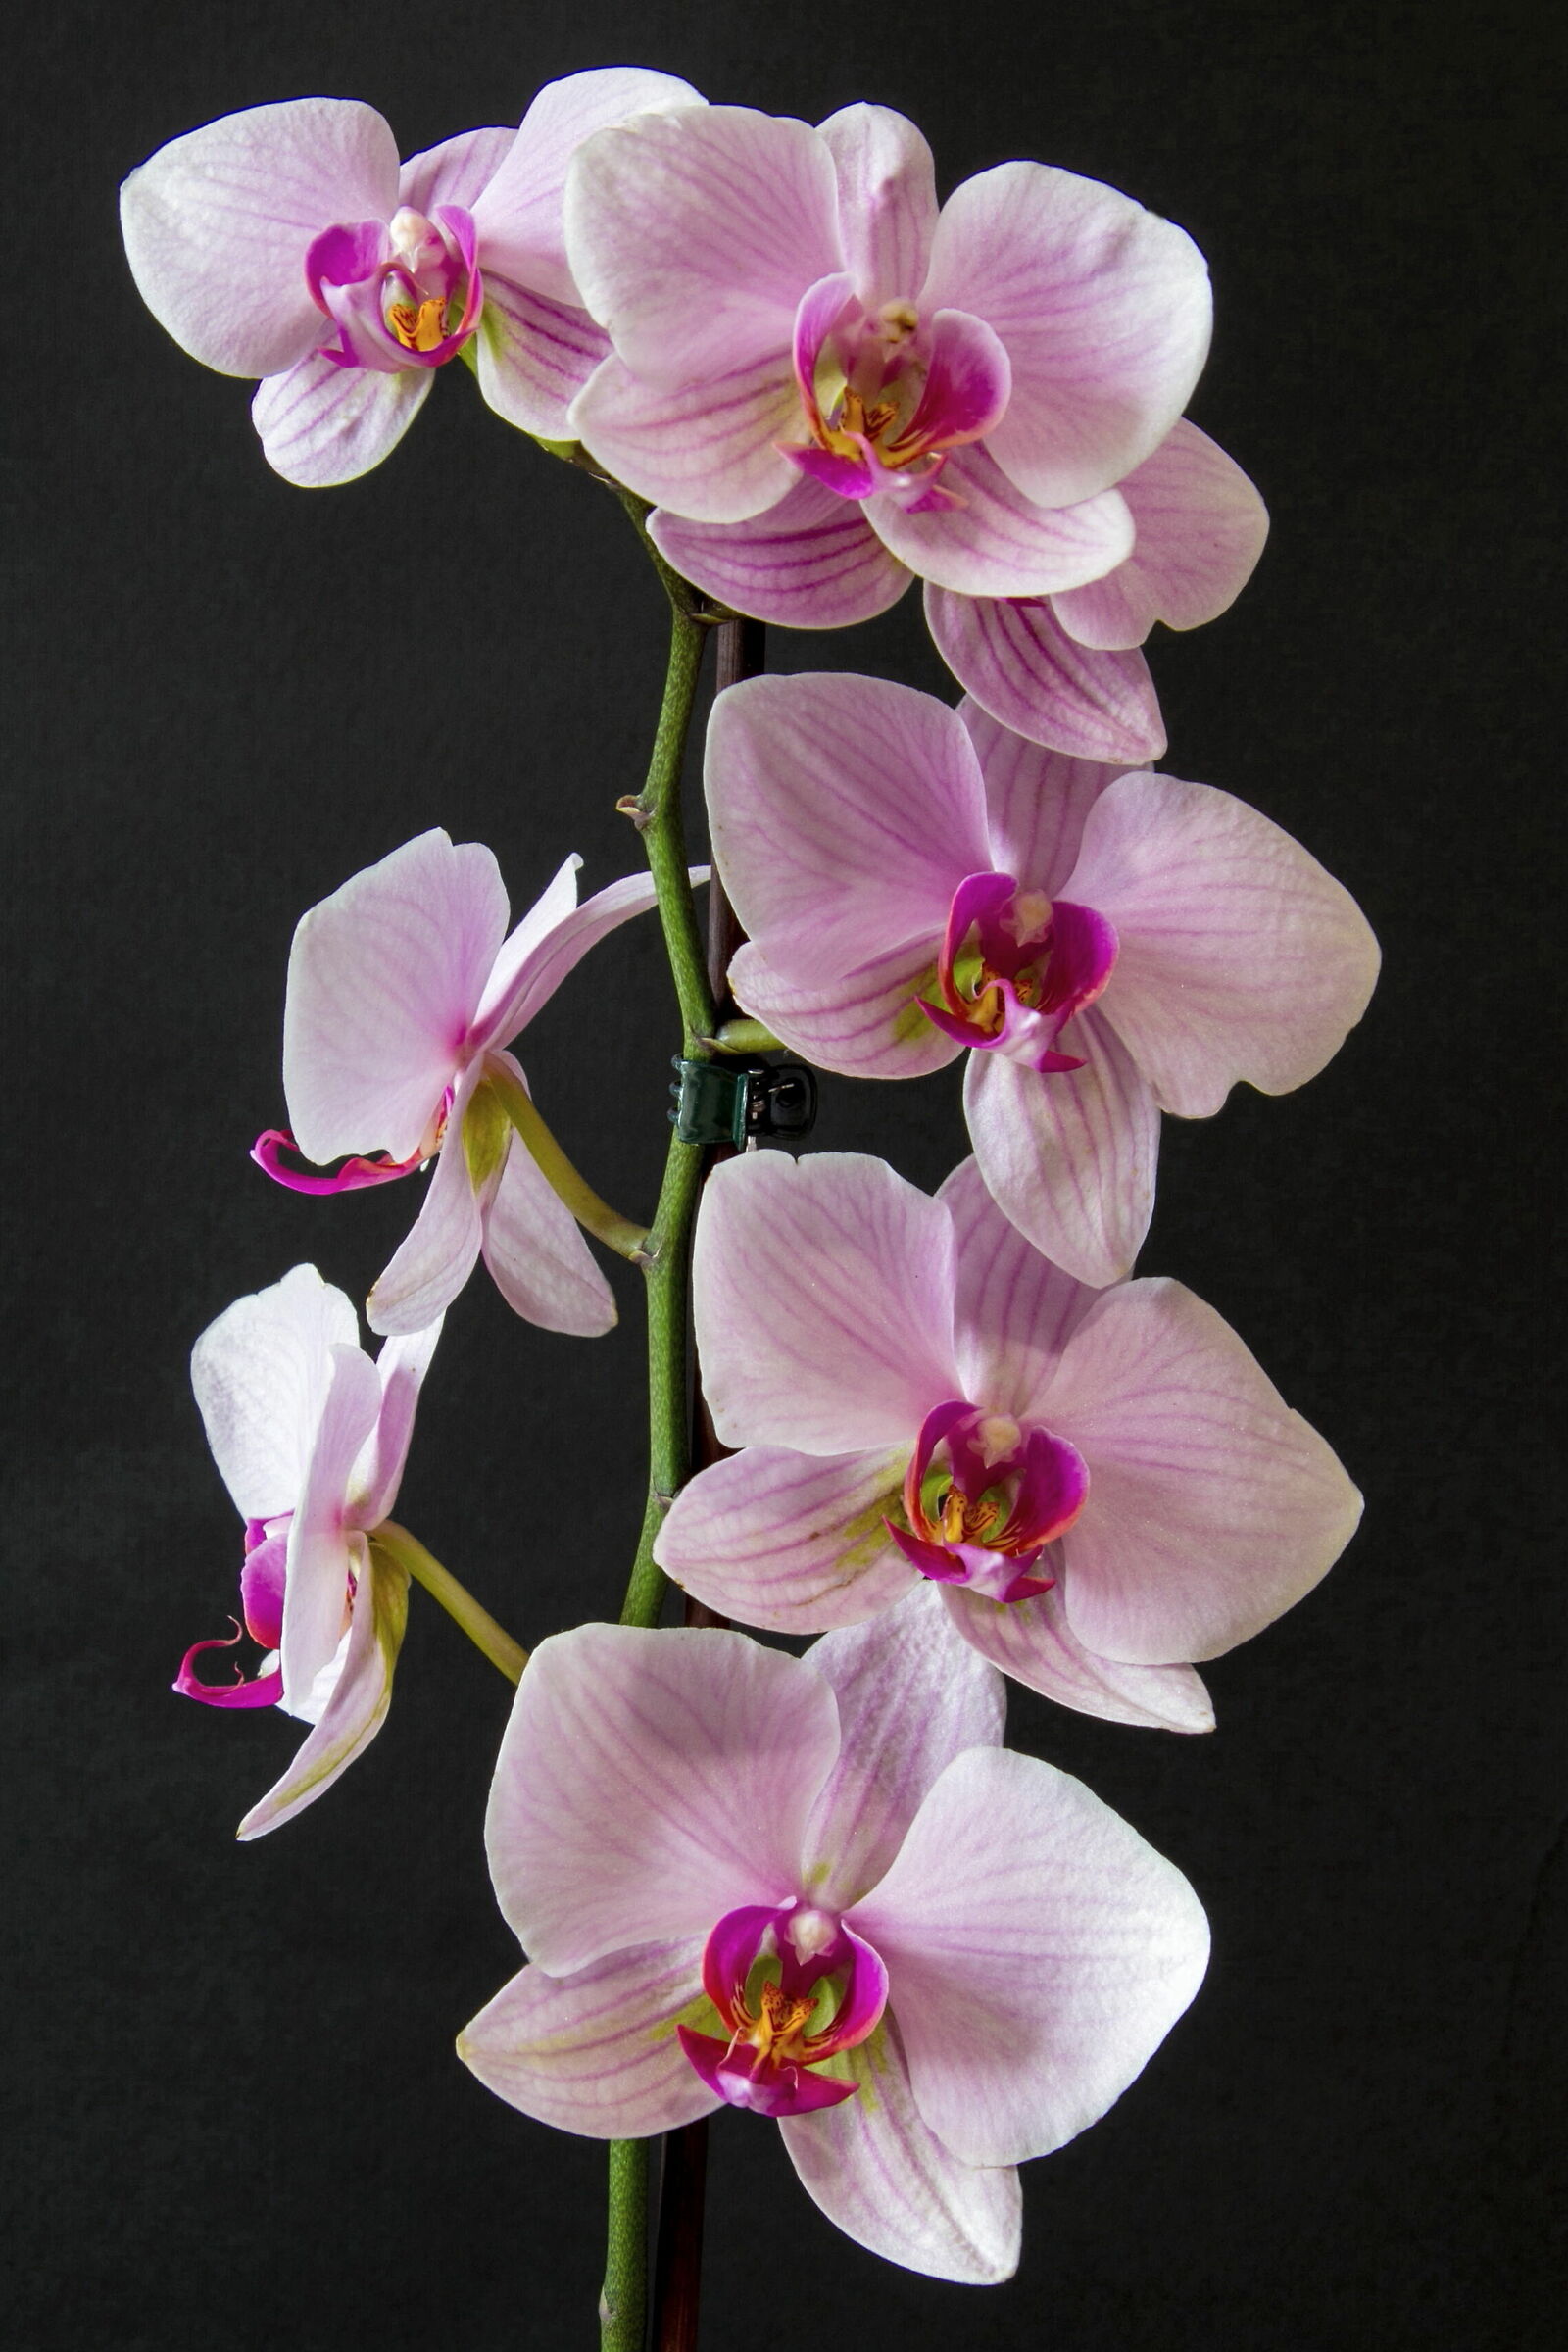 La mia prima orchidea...